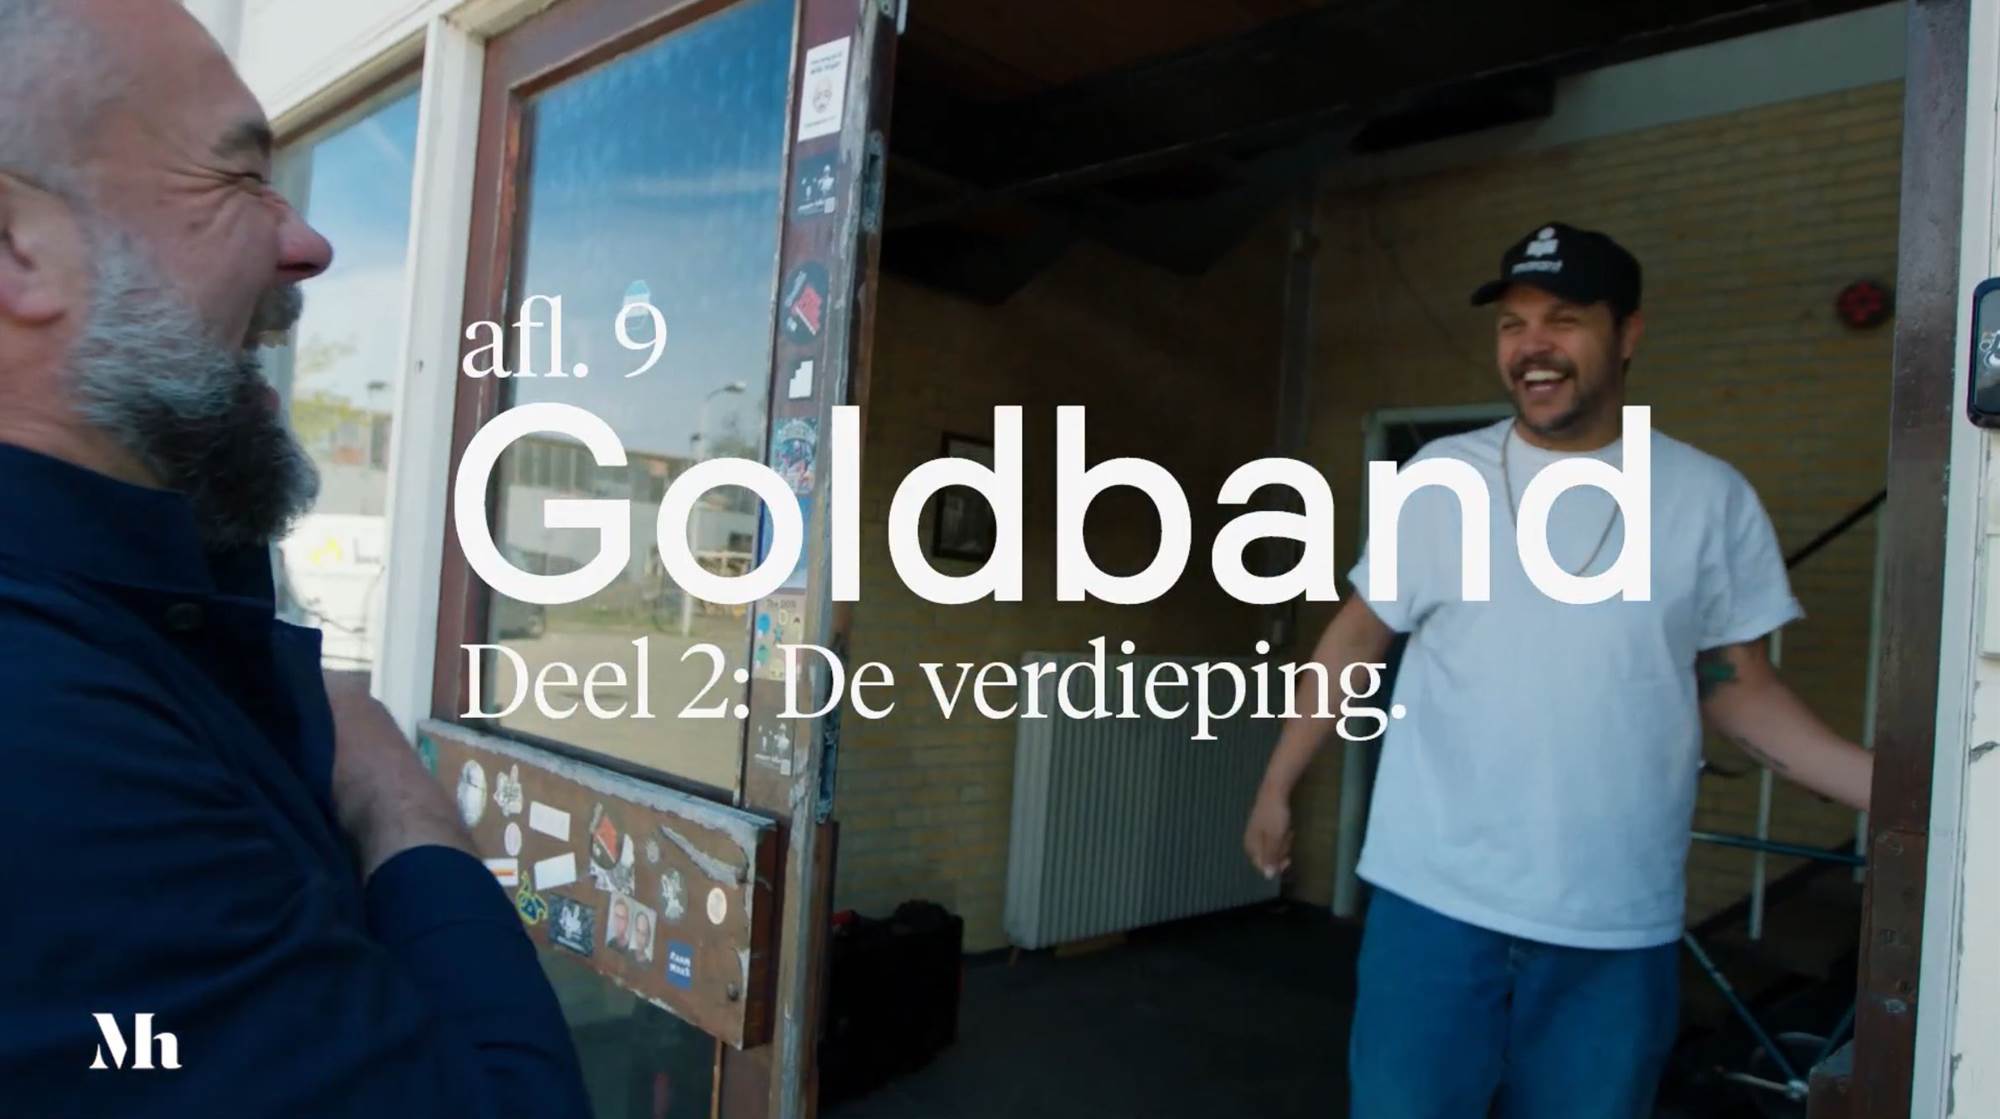 Goldband  The Hague